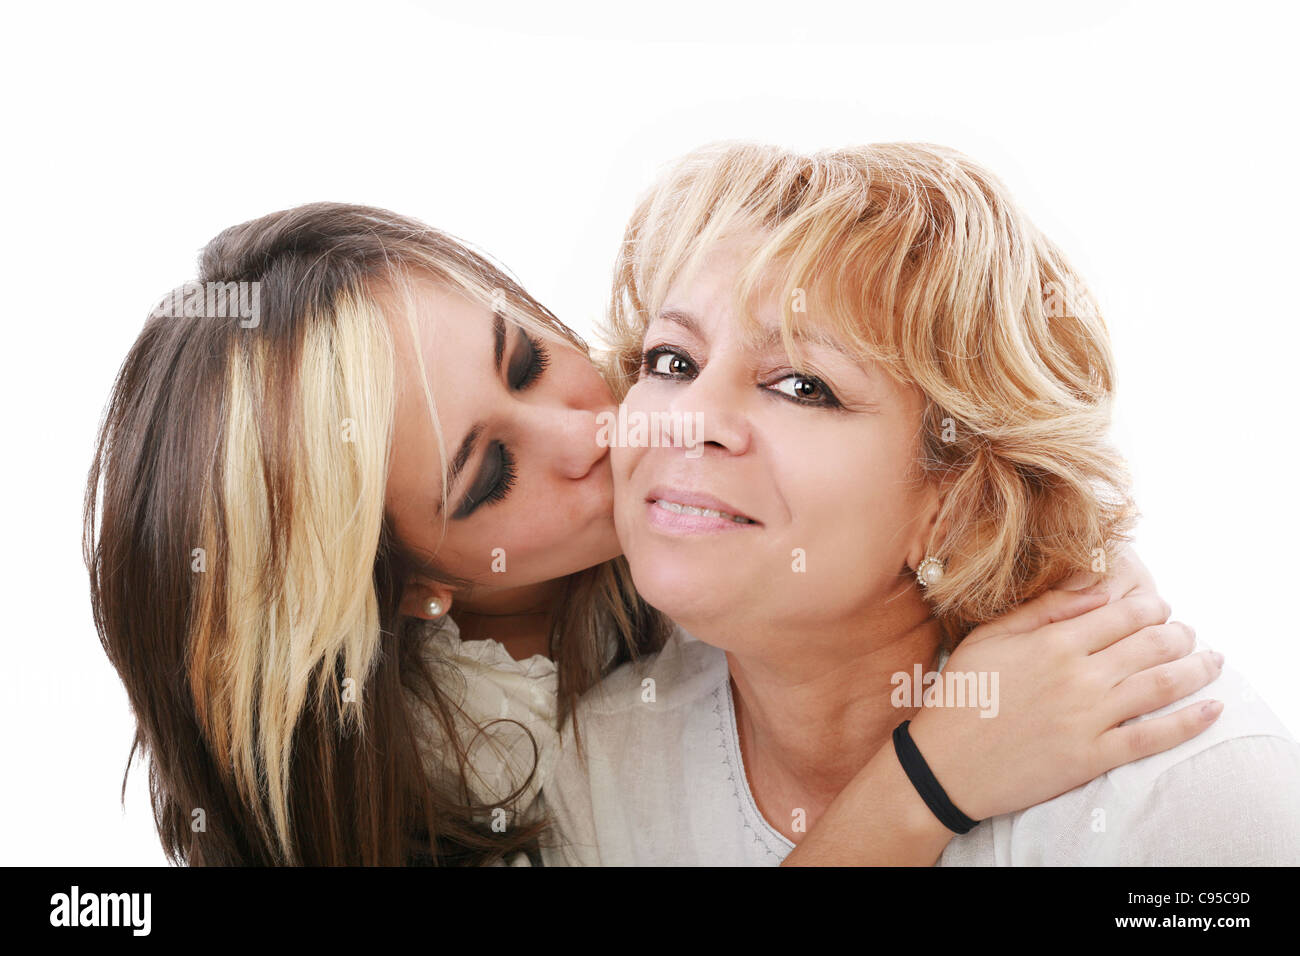 Лесбиянки совратили мать. Мама целует взрослую дочь. Мама+дочка+хахаль. Фото взрослая дочь целует маму. Фотобанк мама и взрослая дочь.